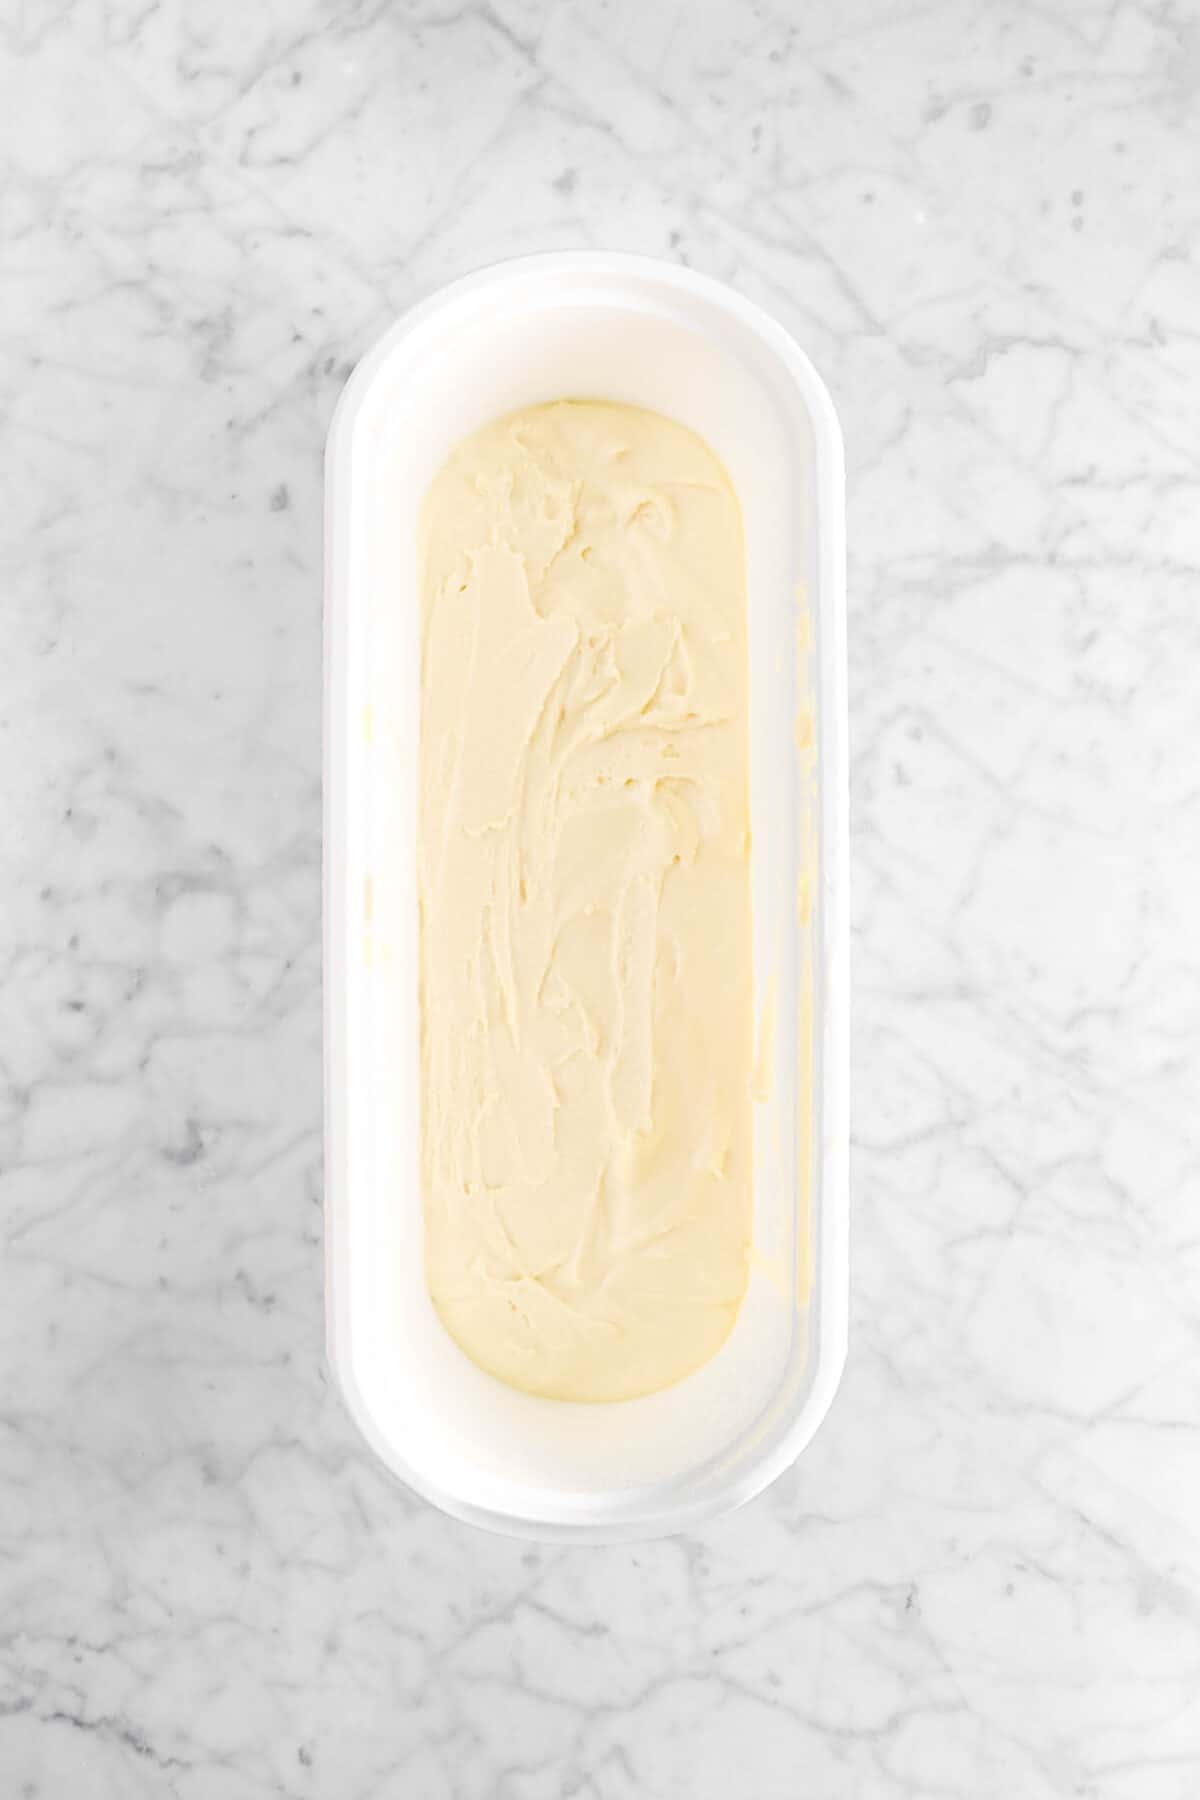 irish cream ice cream in white container